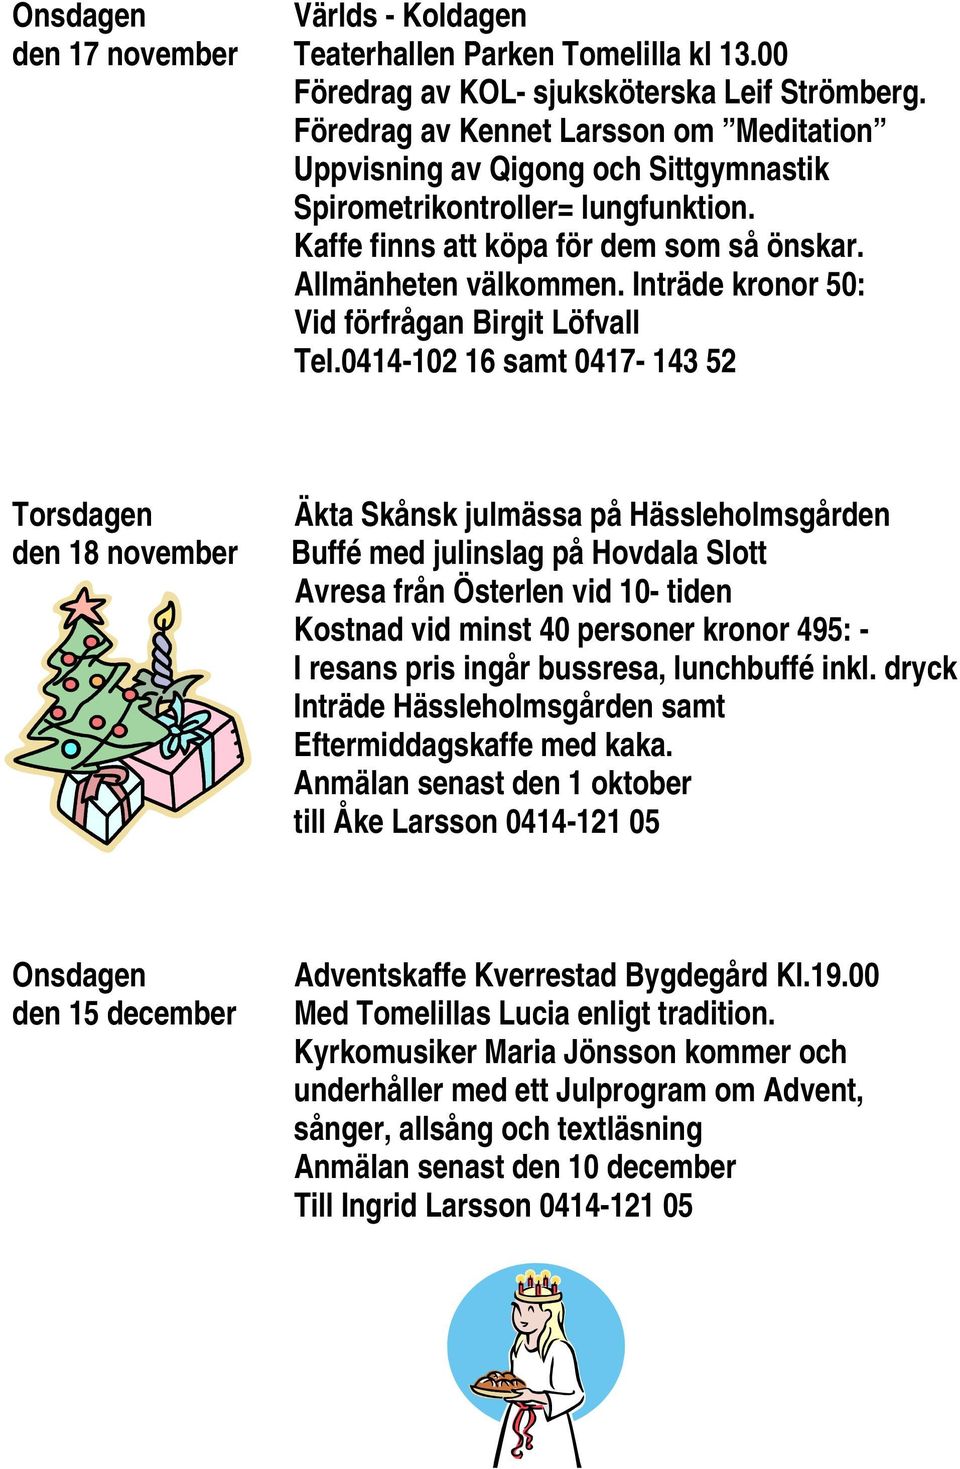 Inträde kronor 50: Vid förfrågan Birgit Löfvall Tel.